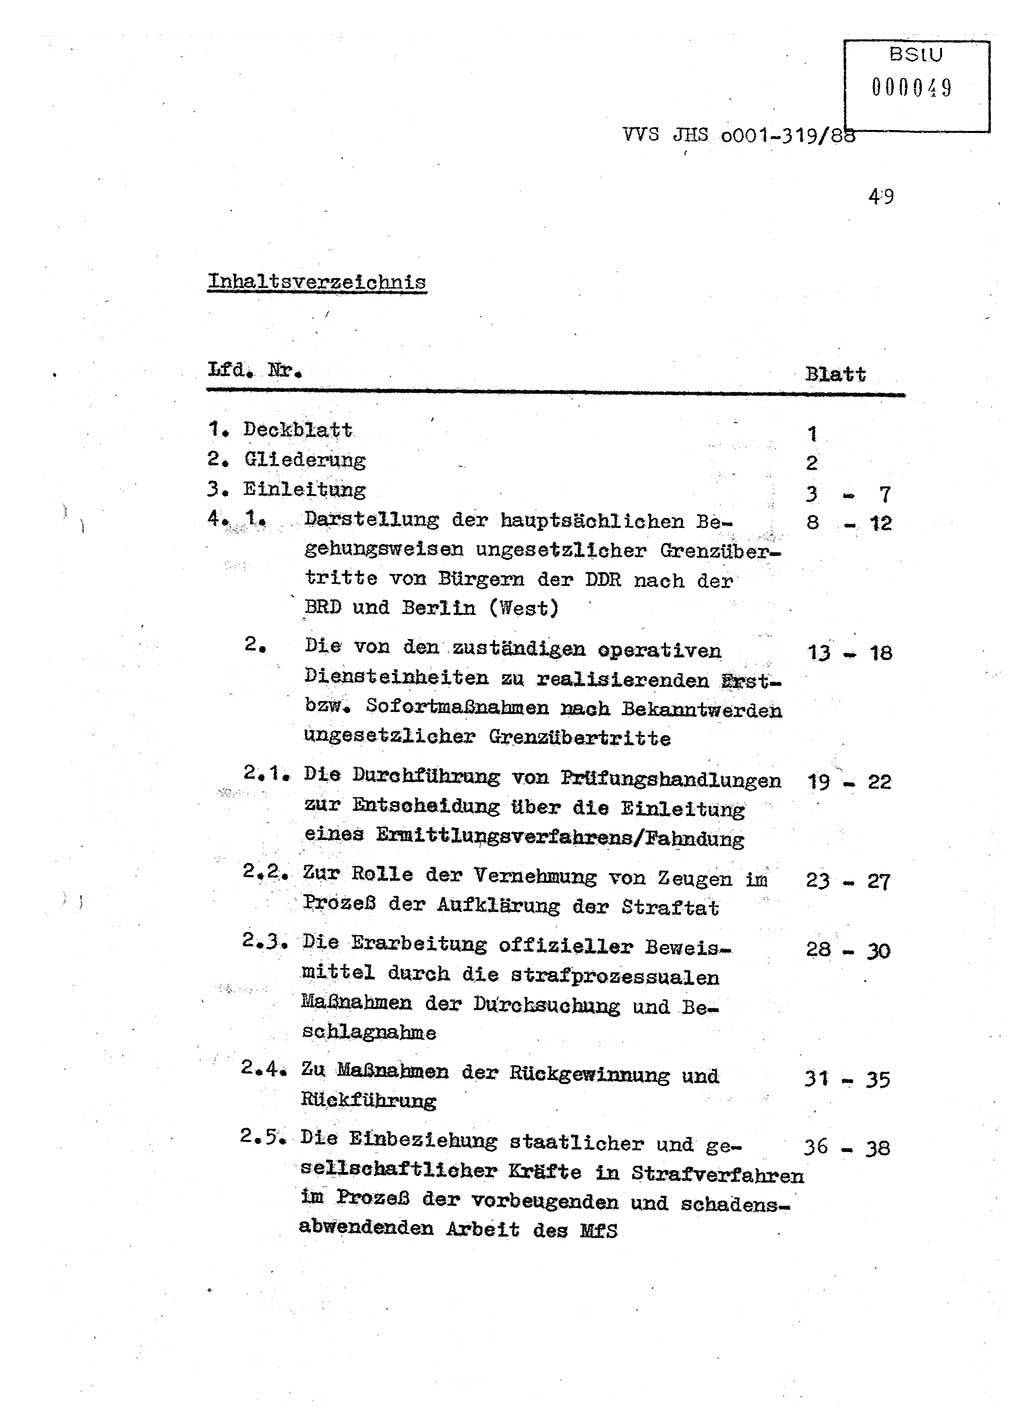 Diplomarbeit Offiziersschüler Holger Zirnstein (HA Ⅸ/9), Ministerium für Staatssicherheit (MfS) [Deutsche Demokratische Republik (DDR)], Juristische Hochschule (JHS), Vertrauliche Verschlußsache (VVS) o001-319/88, Potsdam 1988, Blatt 49 (Dipl.-Arb. MfS DDR JHS VVS o001-319/88 1988, Bl. 49)